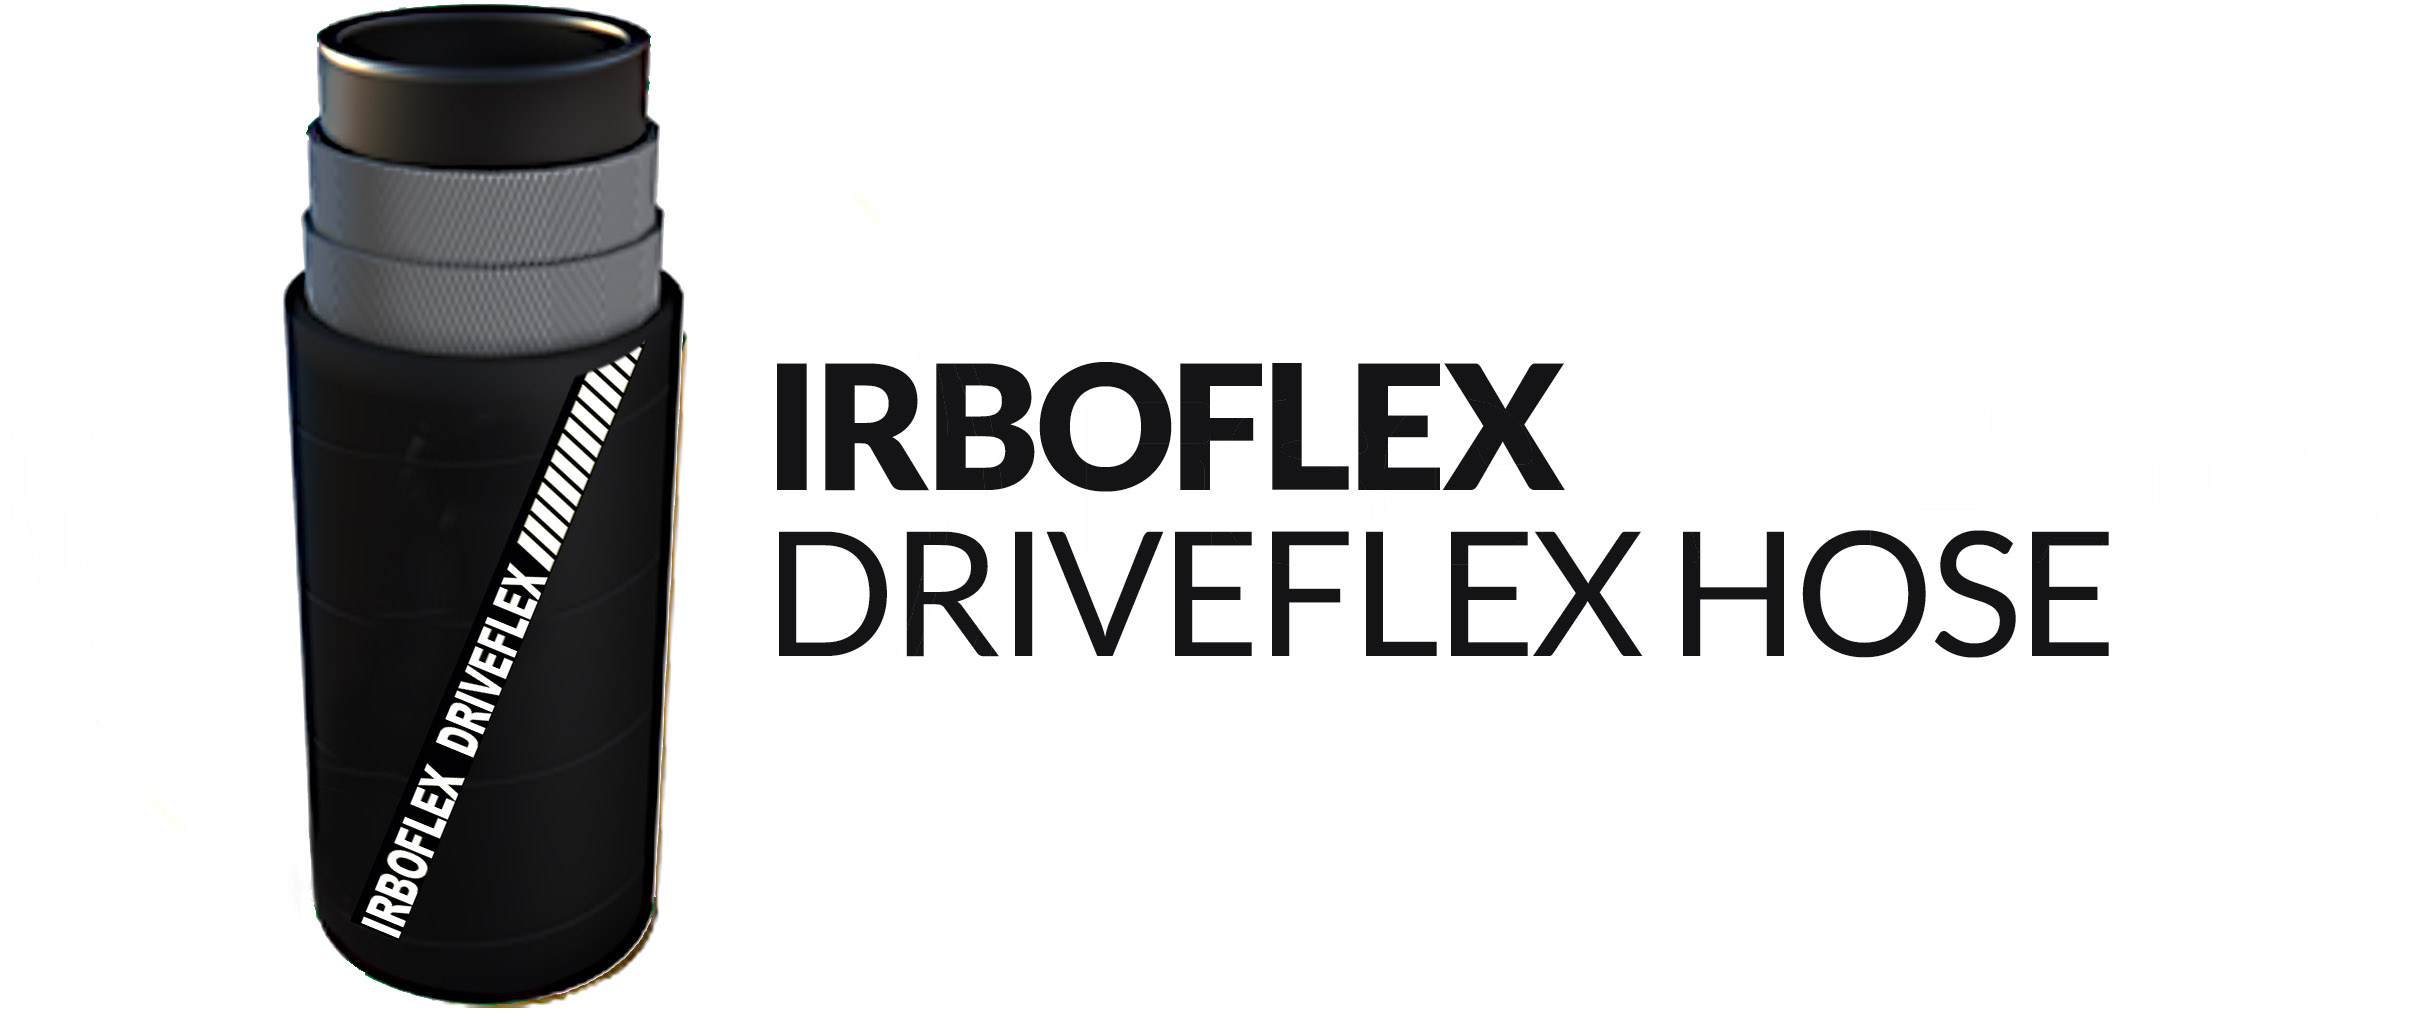 driveflex-irboflex-driveflex-hose